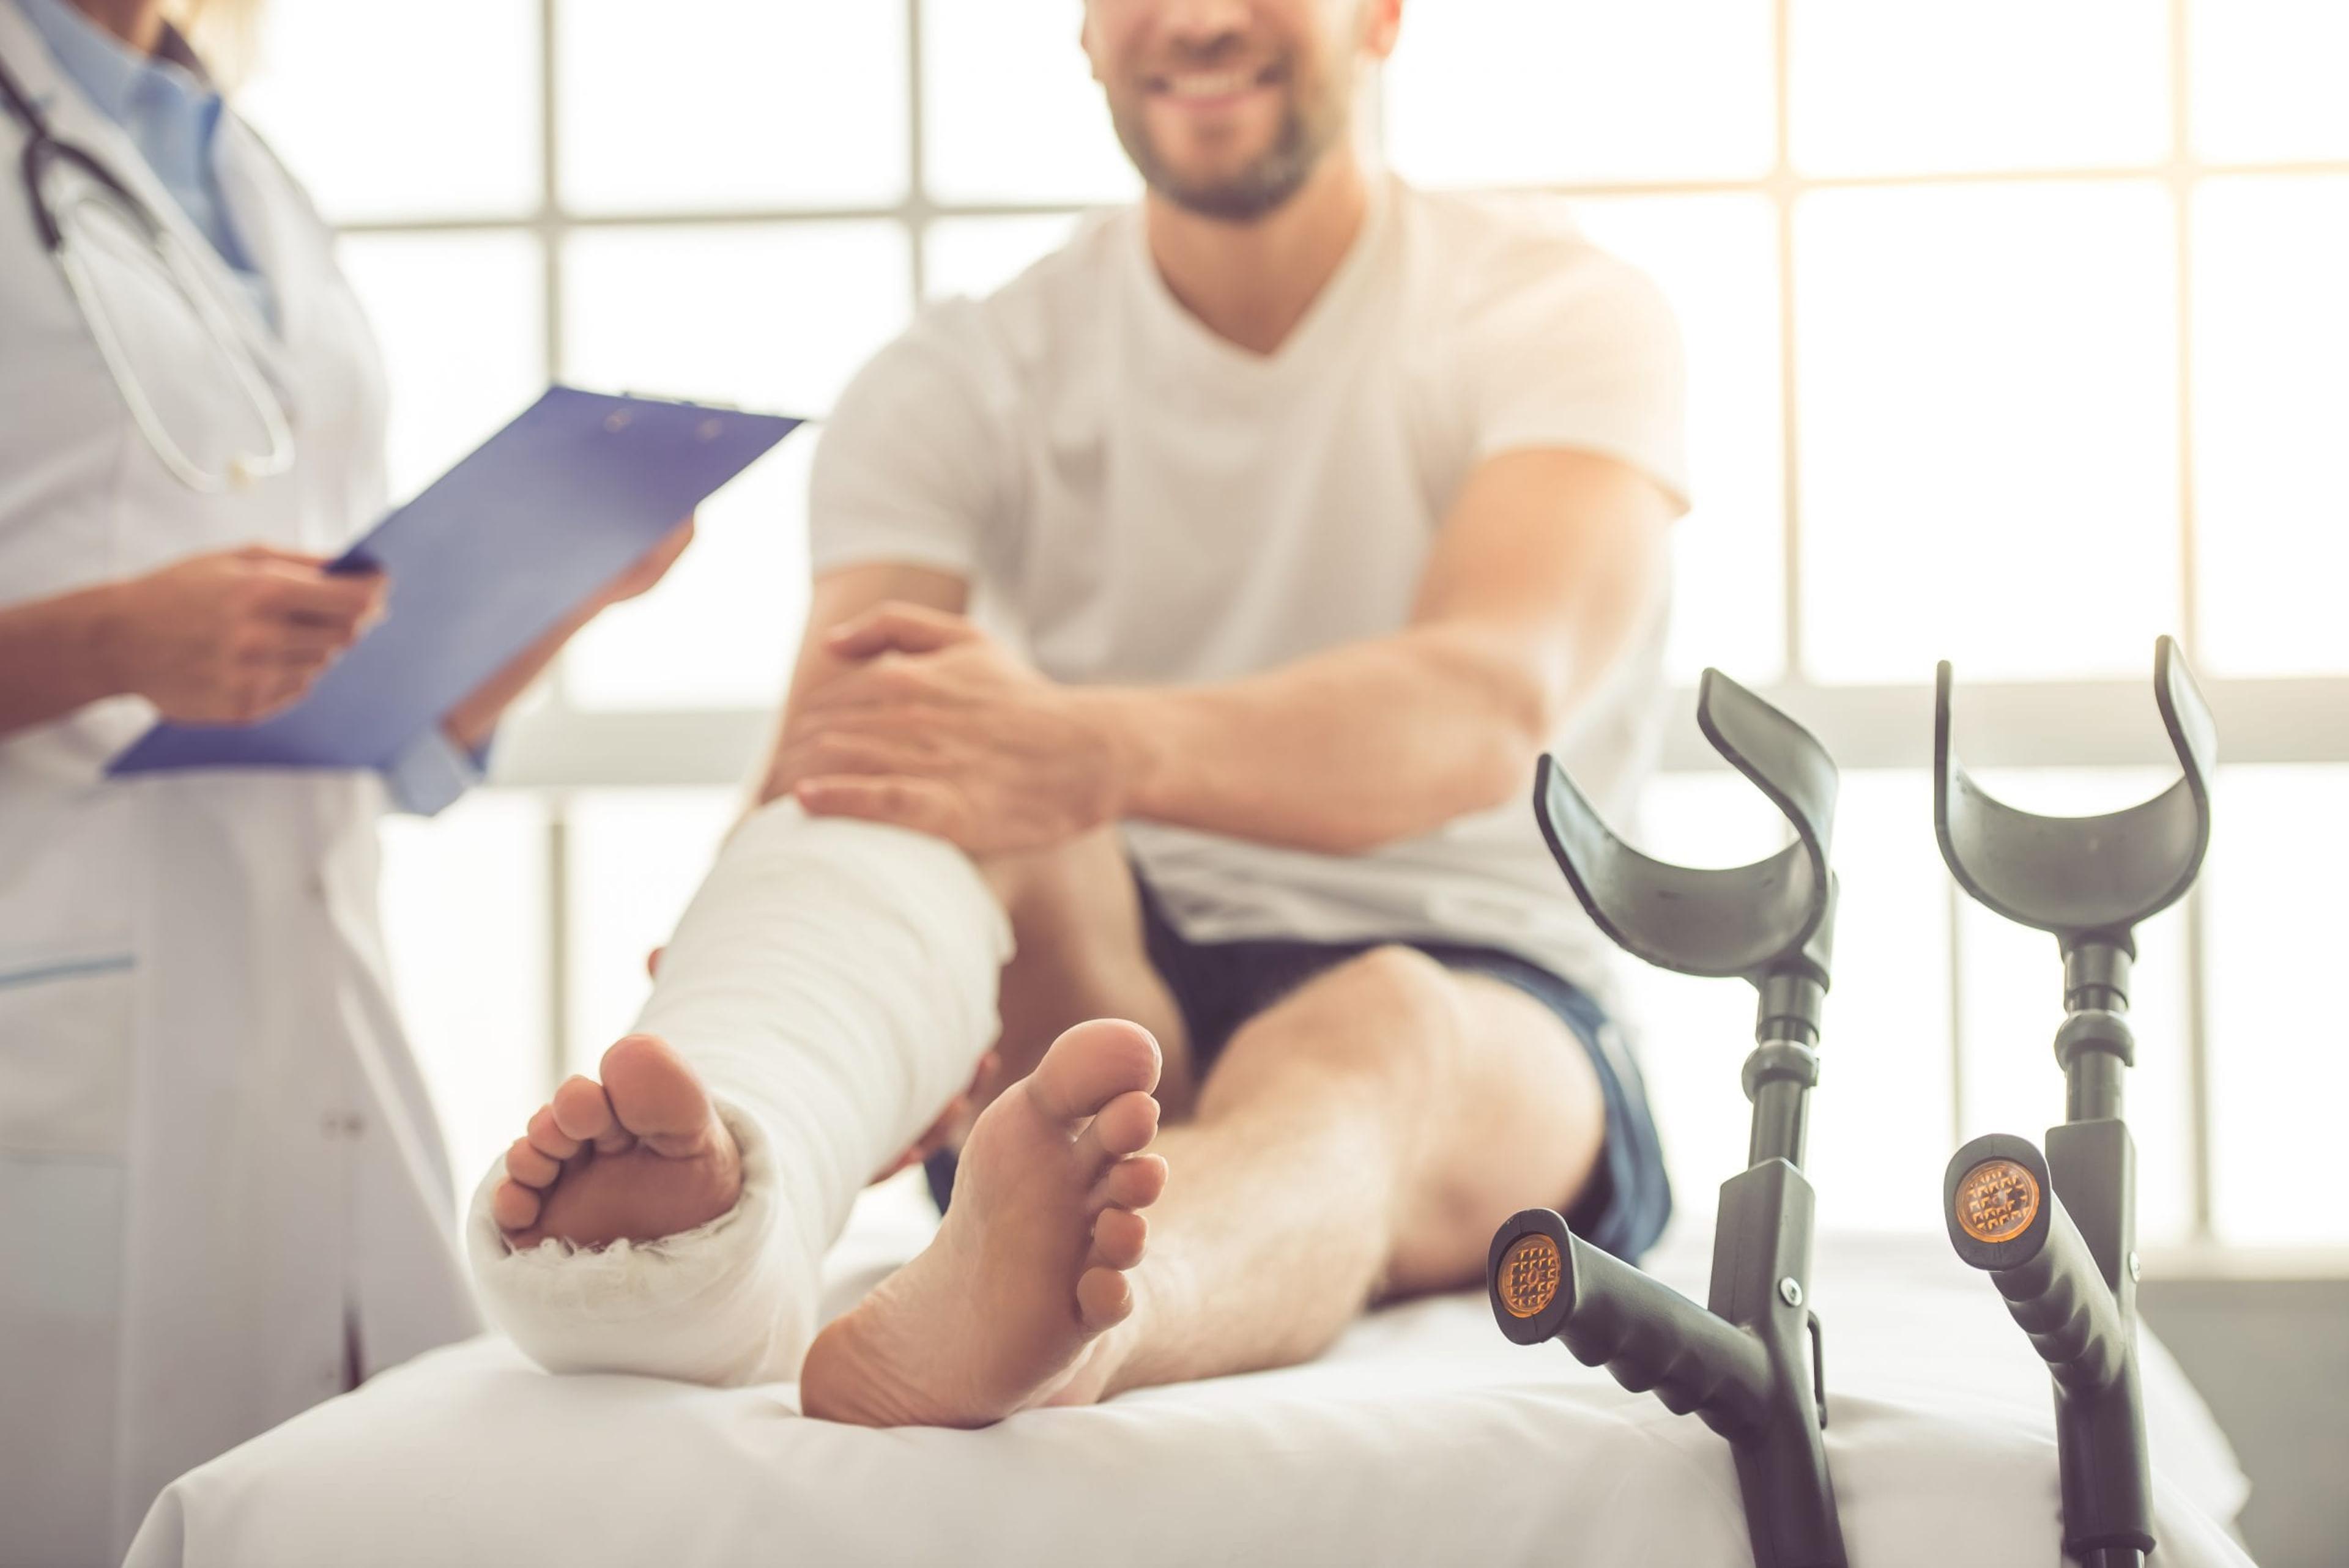 Patient with broken foot or leg